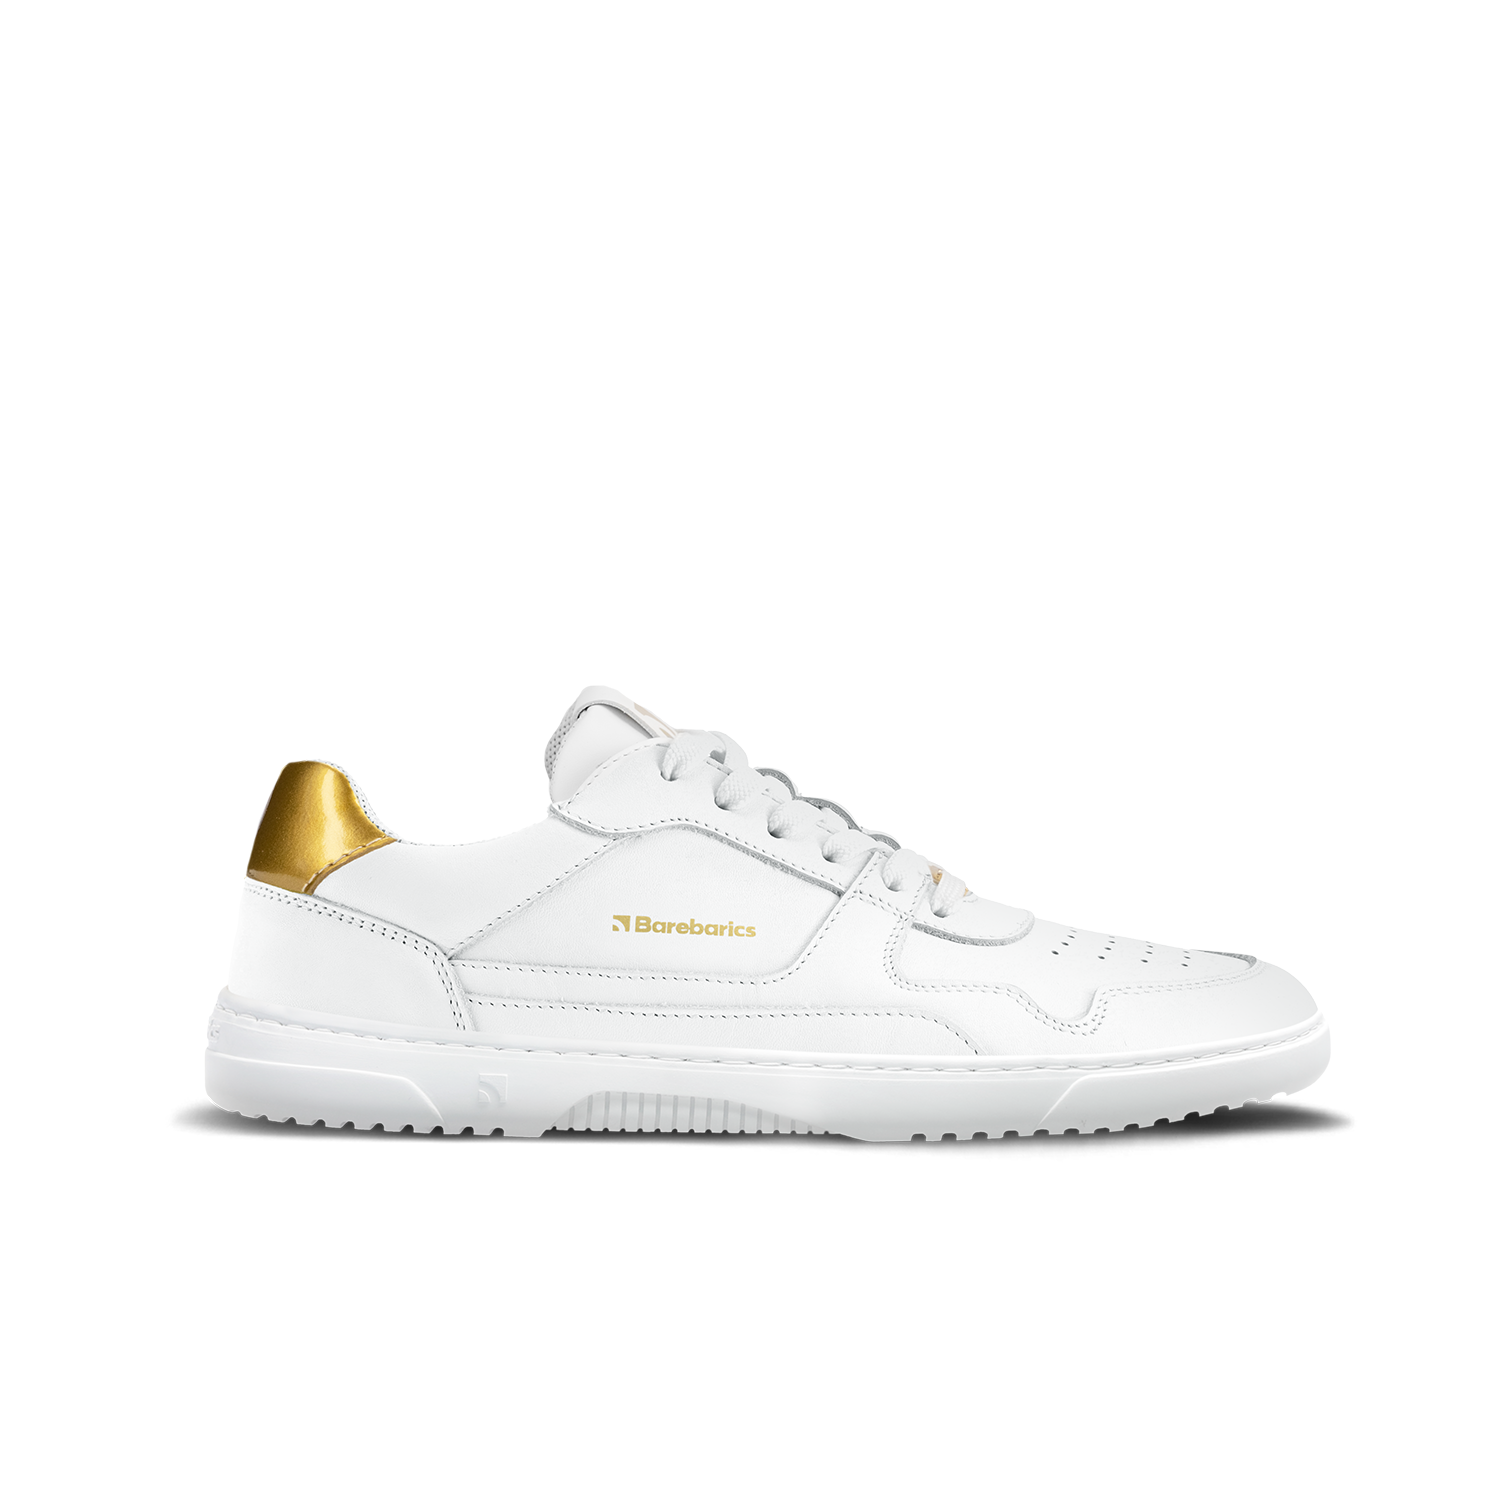 Barefoot tenisky Barebarics Zing - White & Gold - Leather Velikost: 36